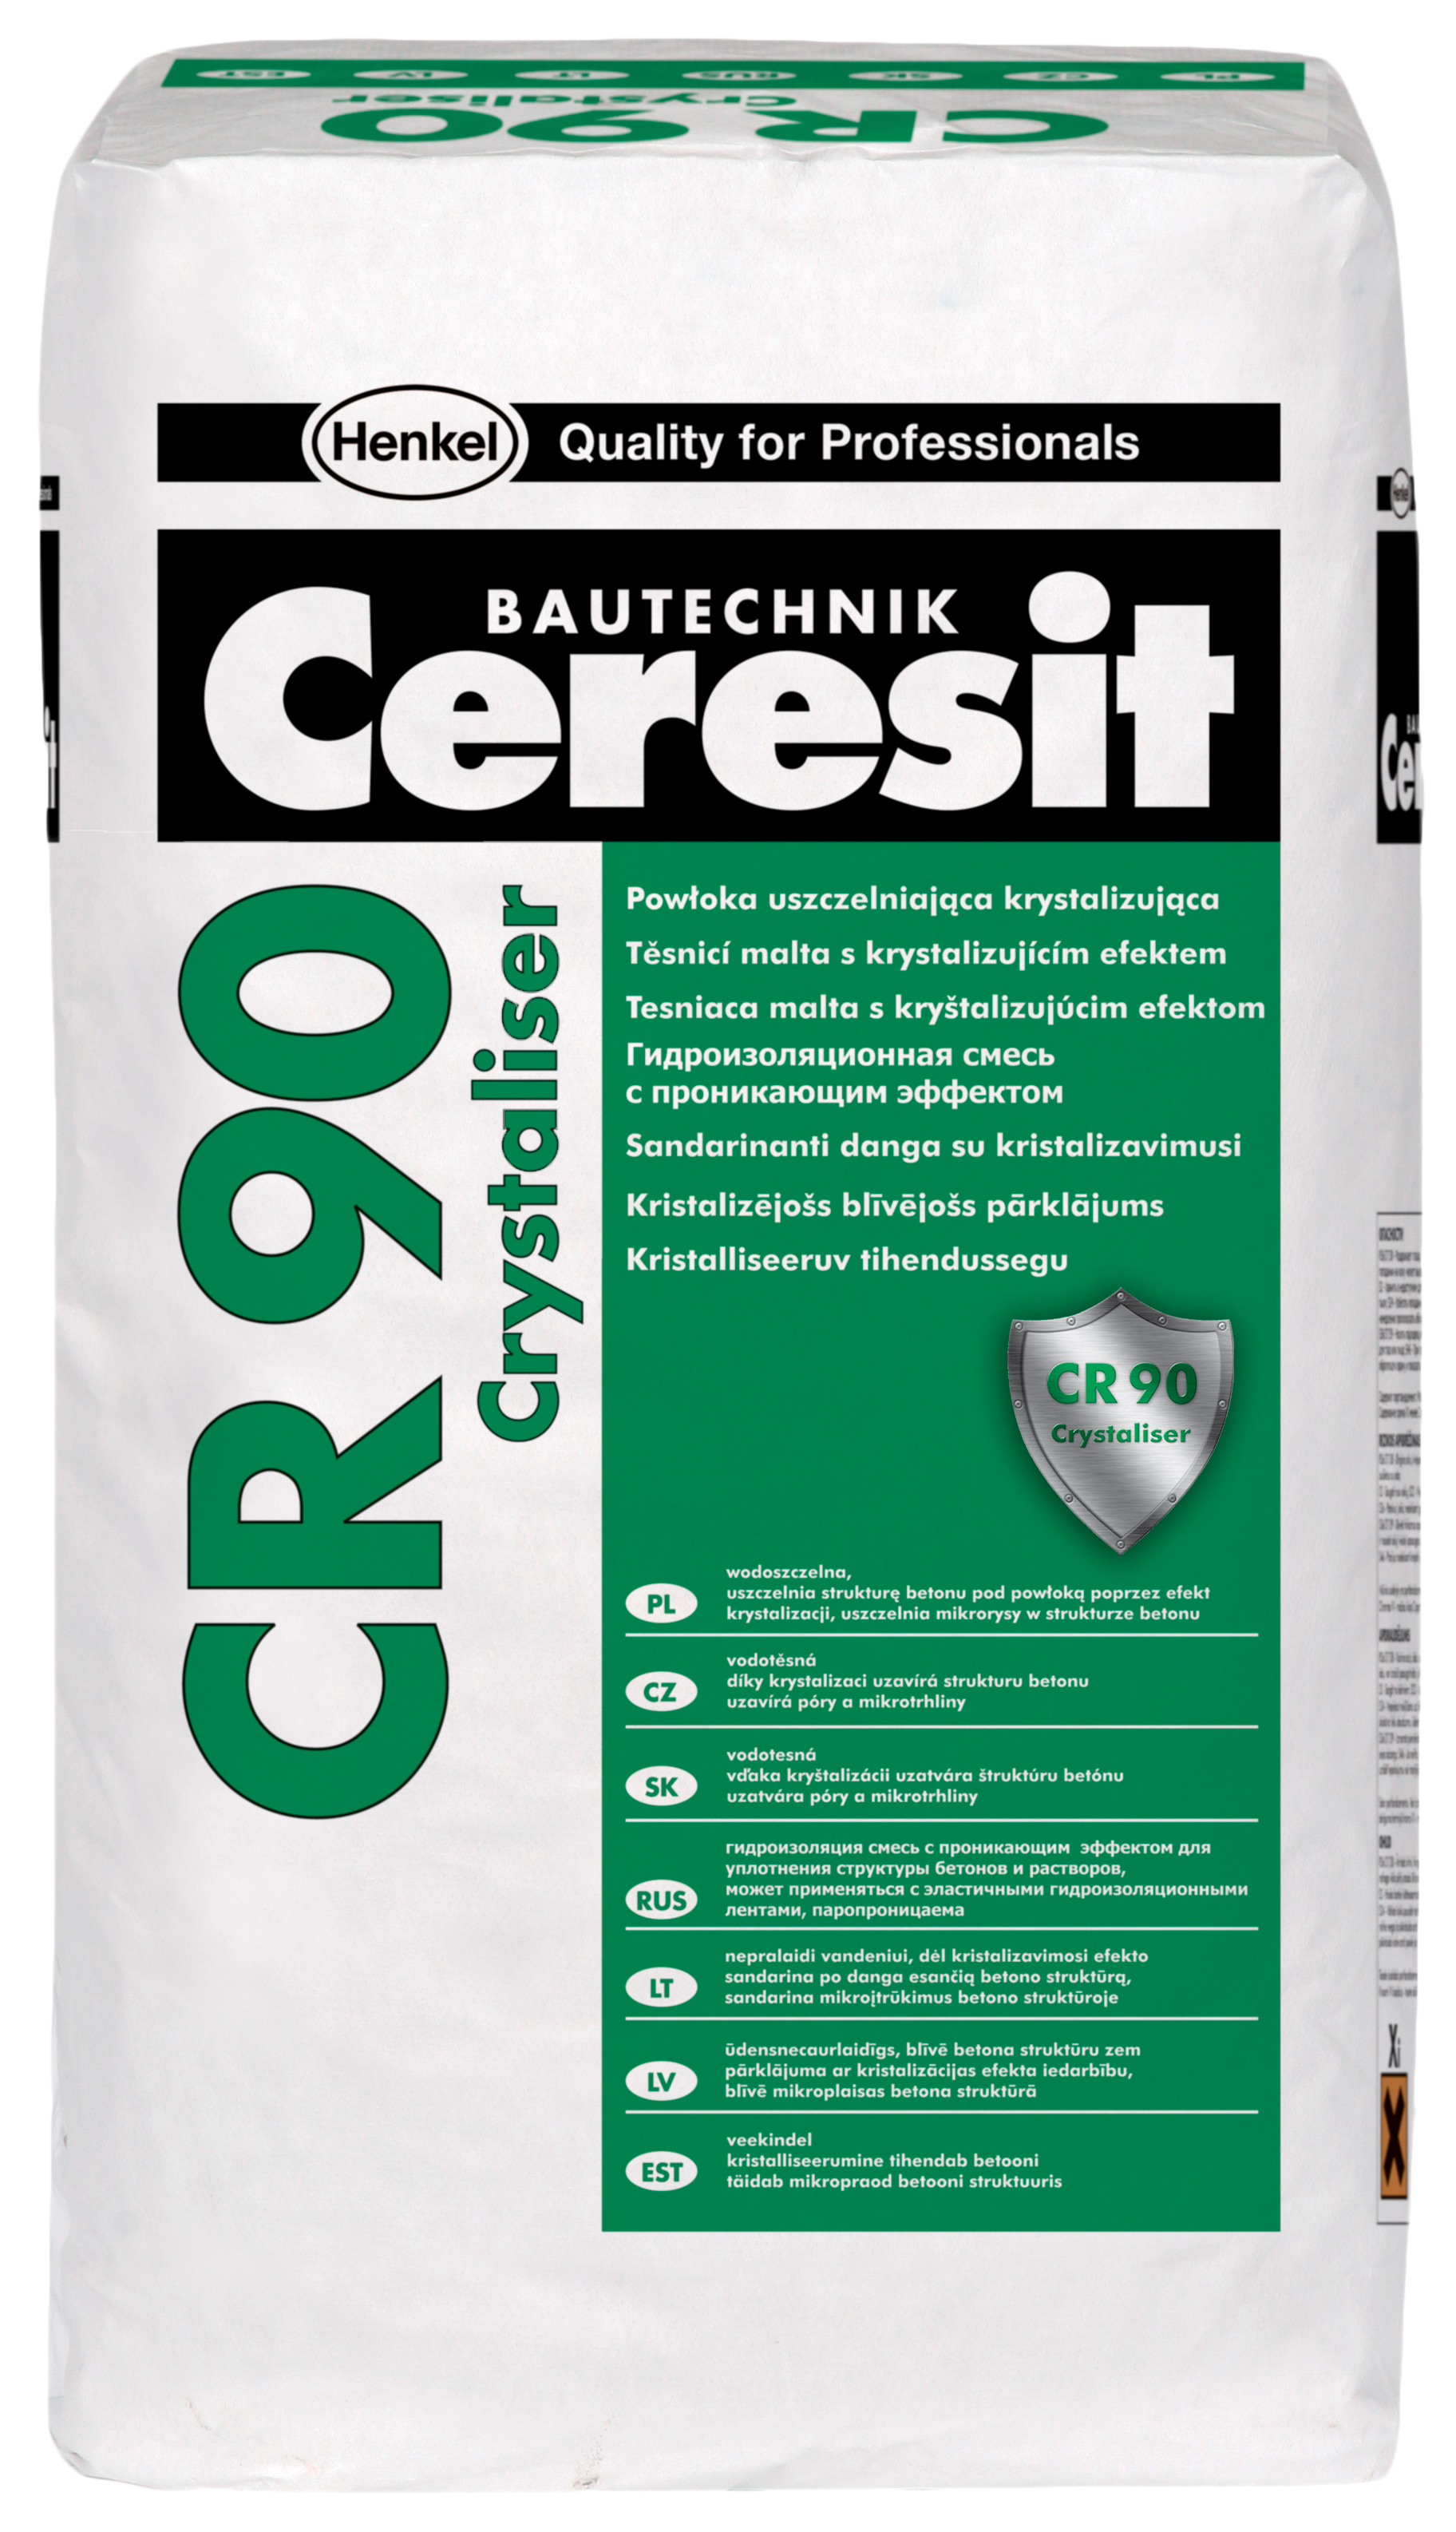 A Ceresit CR 90 kristályképző előnyei egy hagyományos vízszigetelő habarccsal szemben